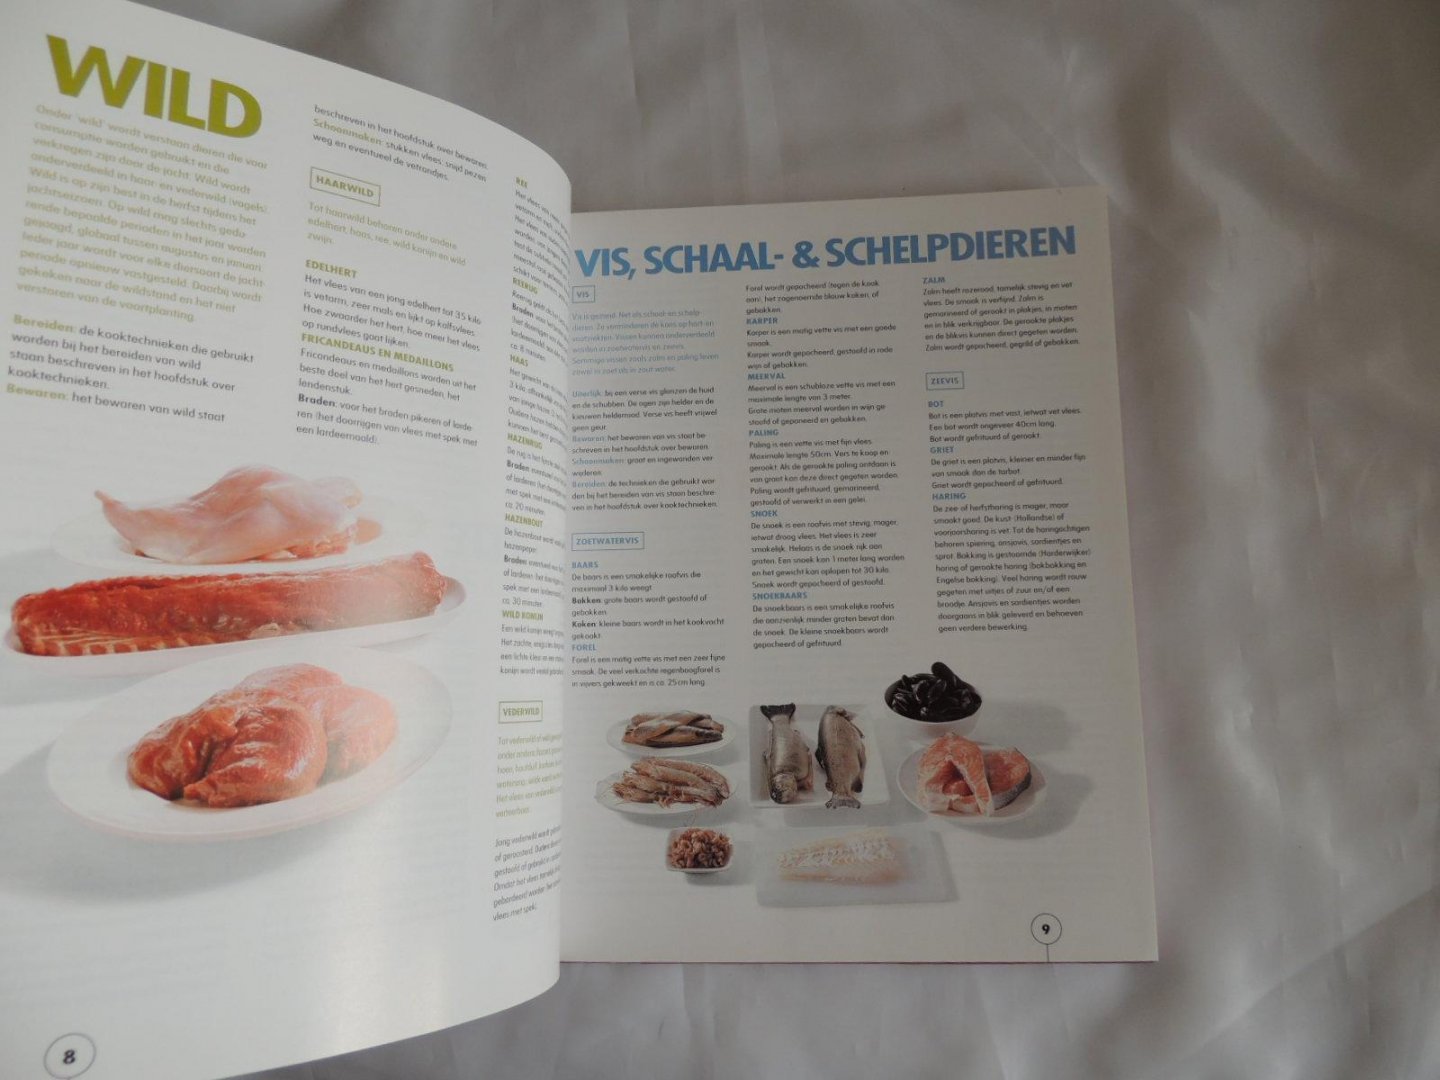 Jaarsveld, Hanne van (culinaire redactie) - Zien is koken / het vier-seizoenen-kookboek van Super de Boer